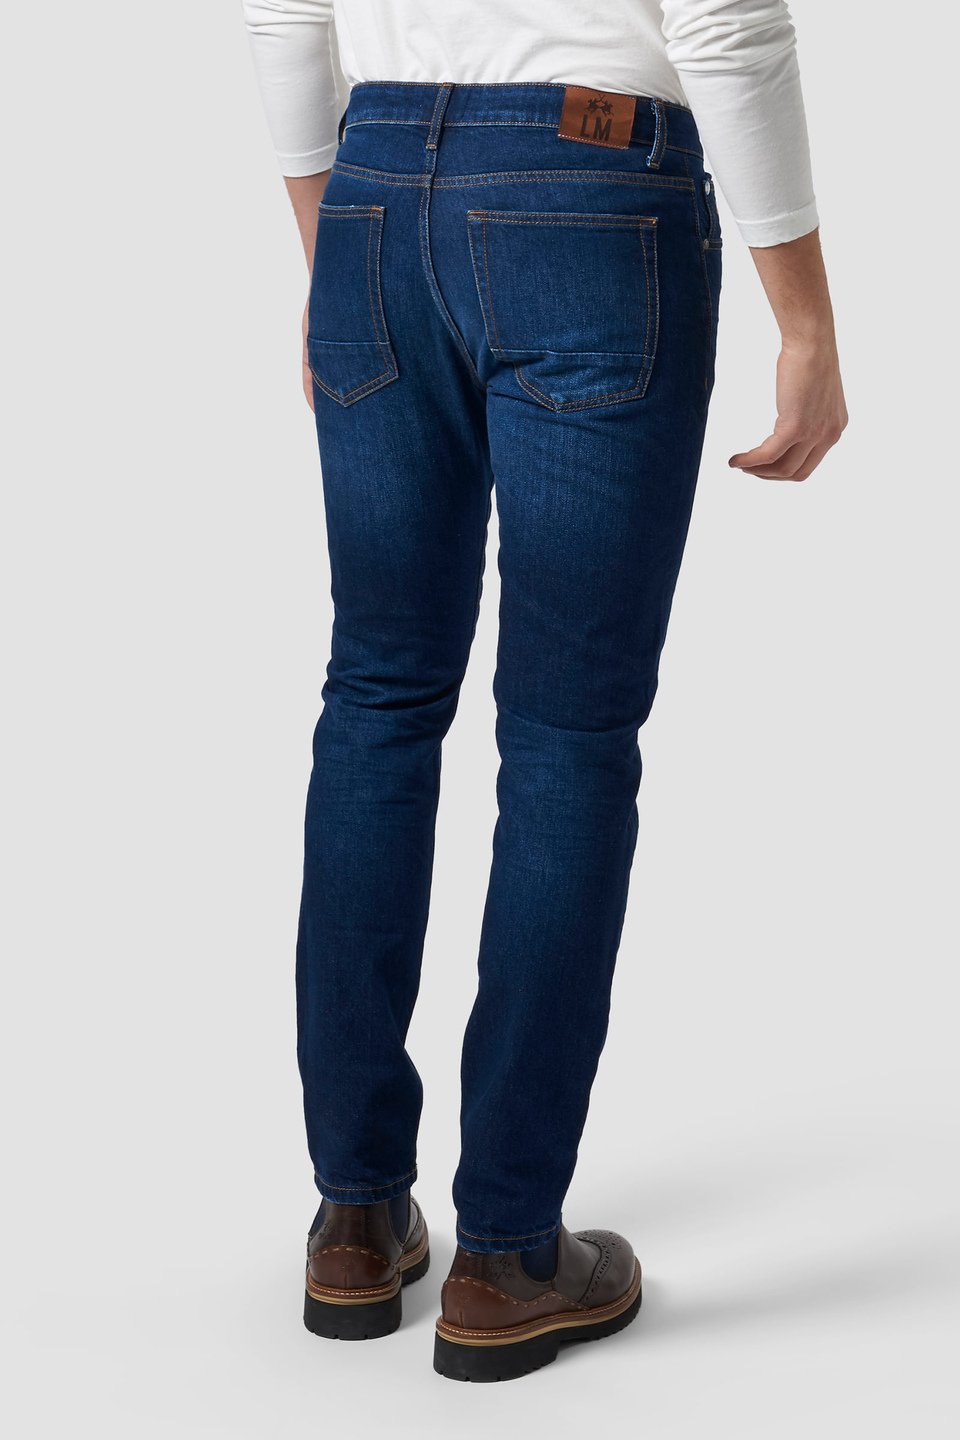 5-pocket cotton trousers - La Martina - Official Online Shop